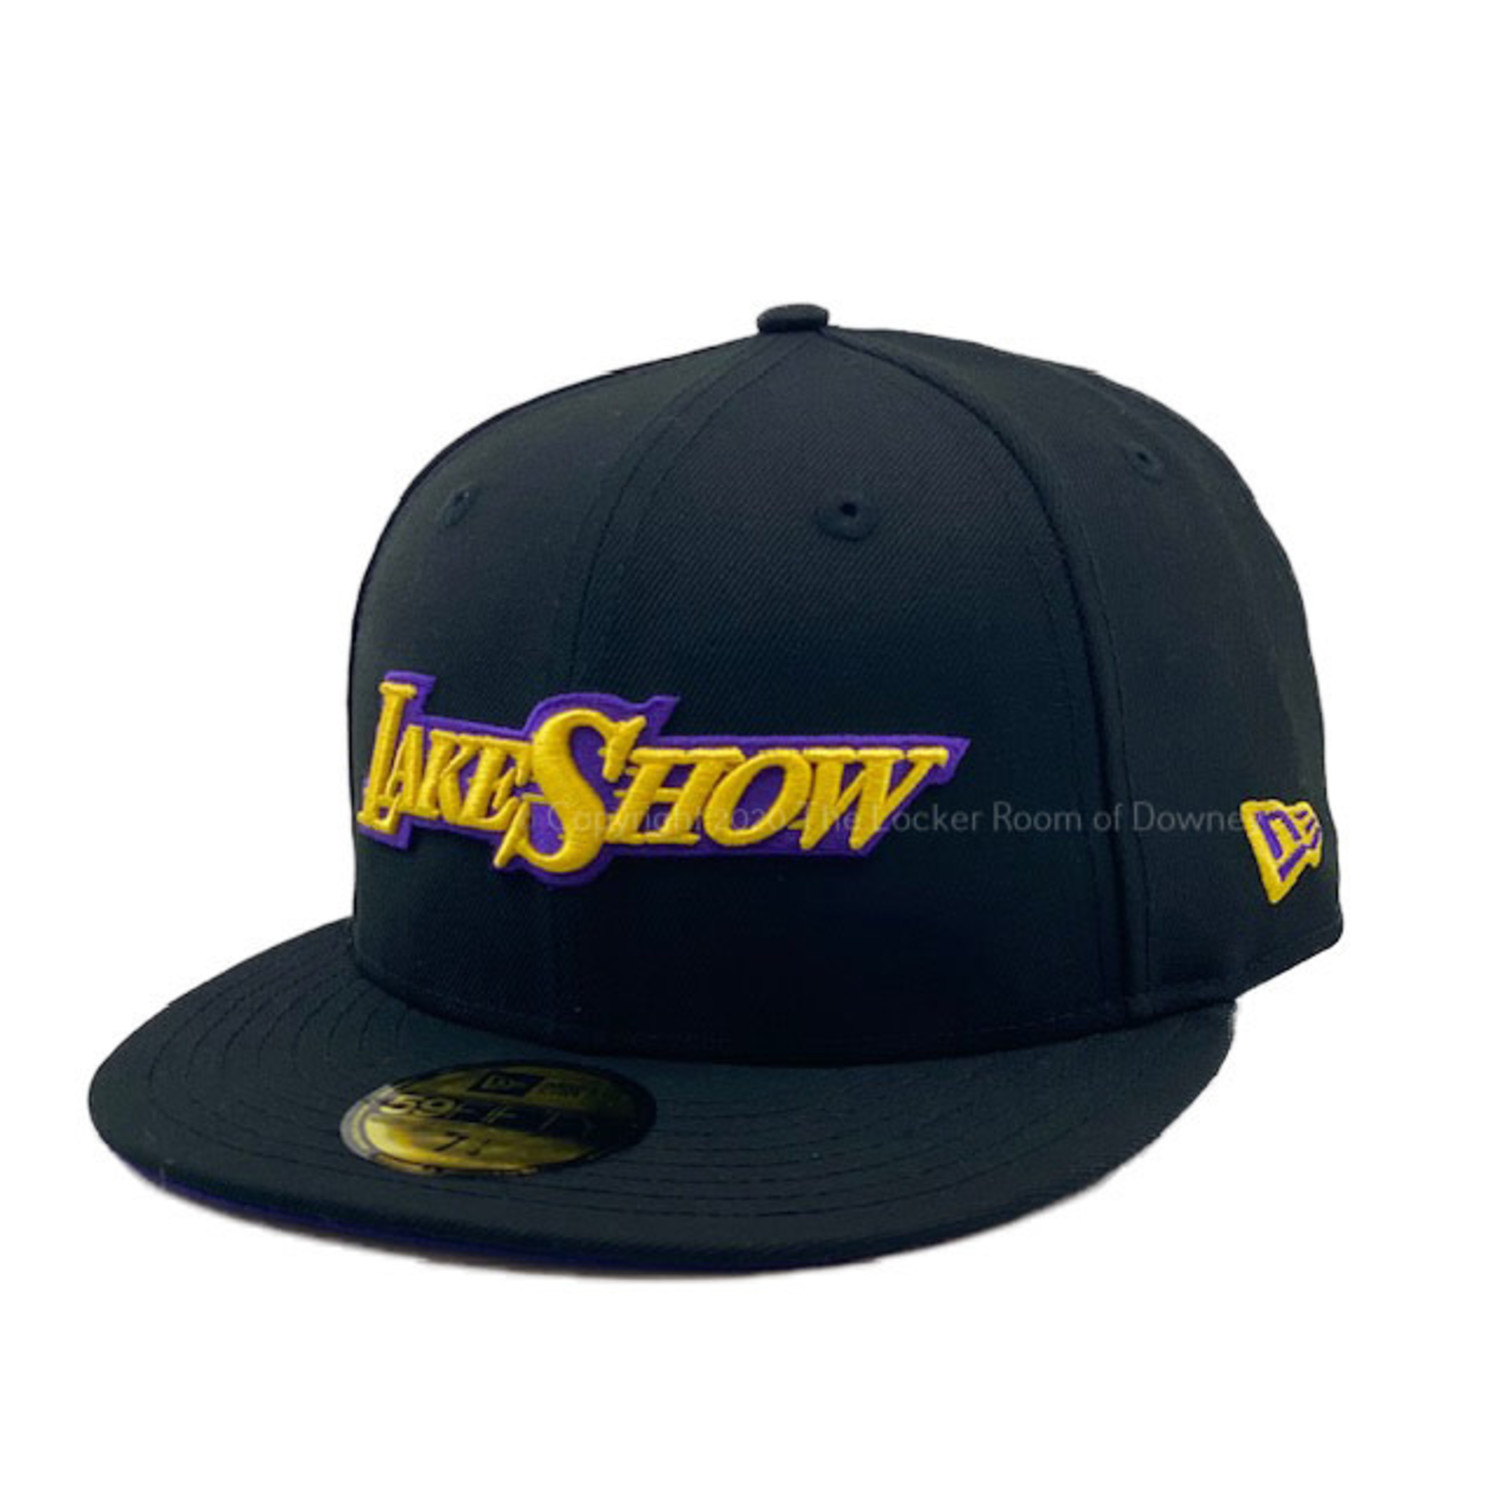 LA Lakers W NE Purple Tie Dye L/S Crop - The Locker Room of Downey